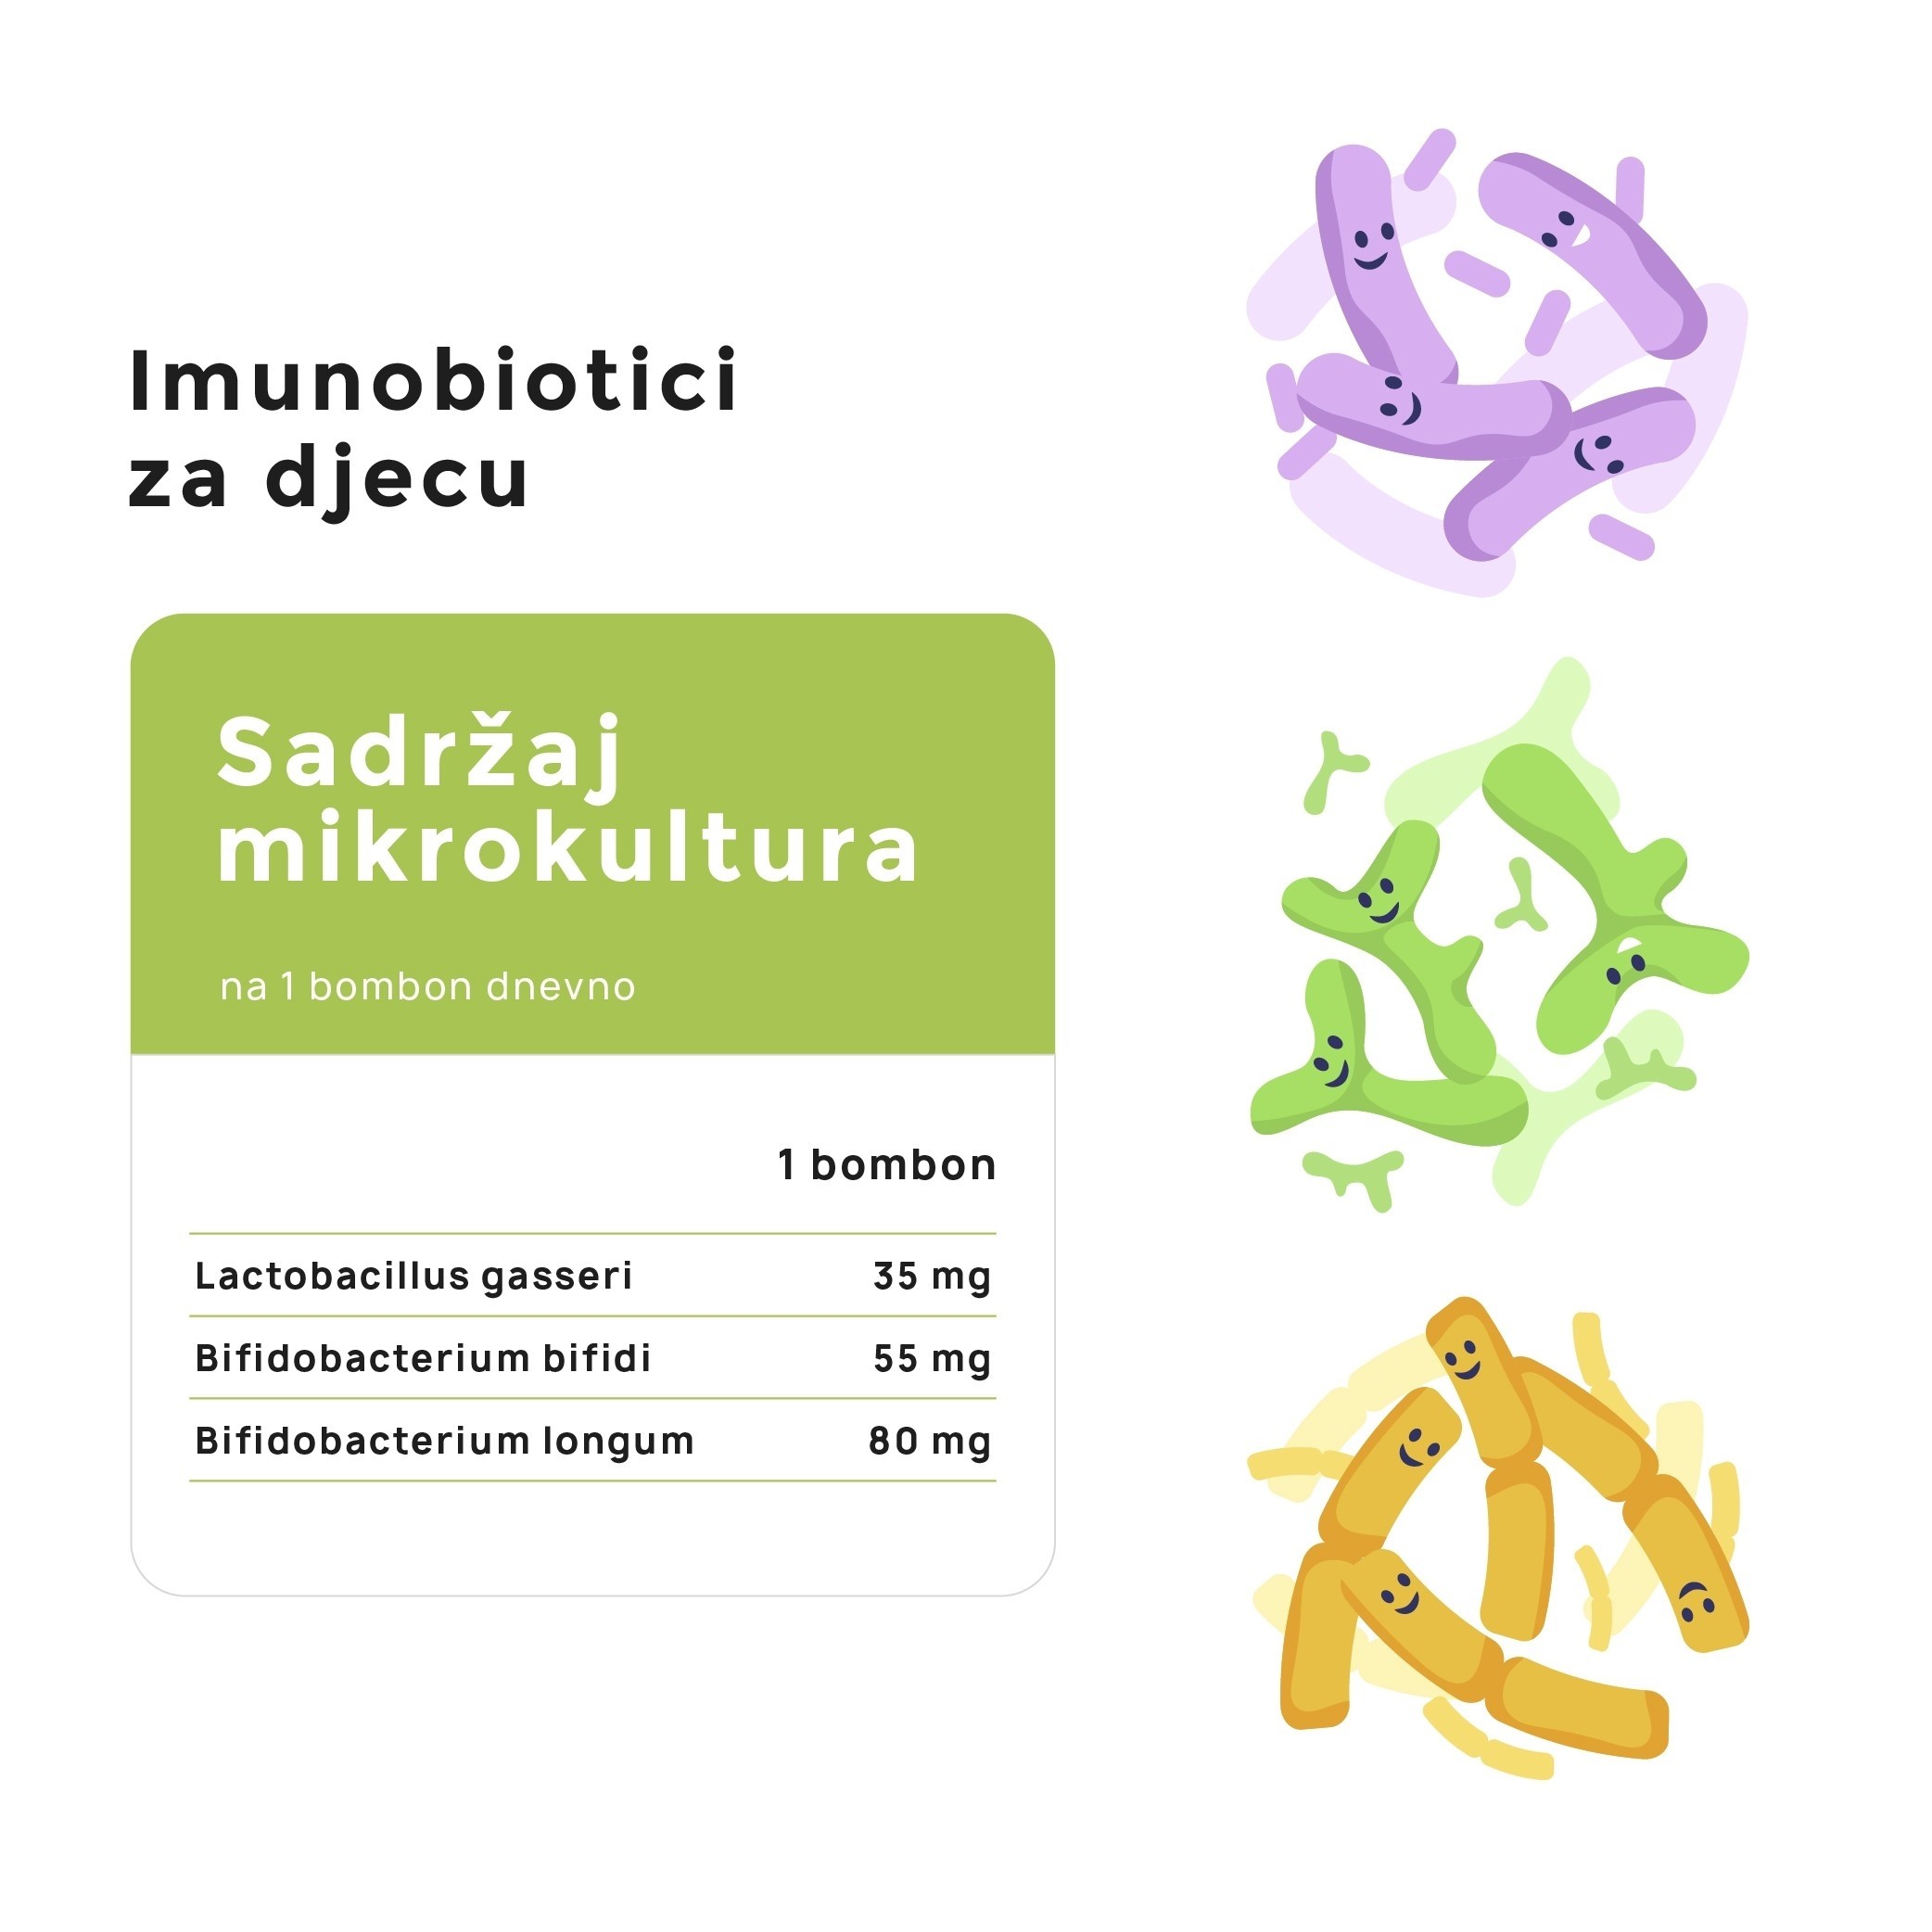 Imunobiotici za djecu